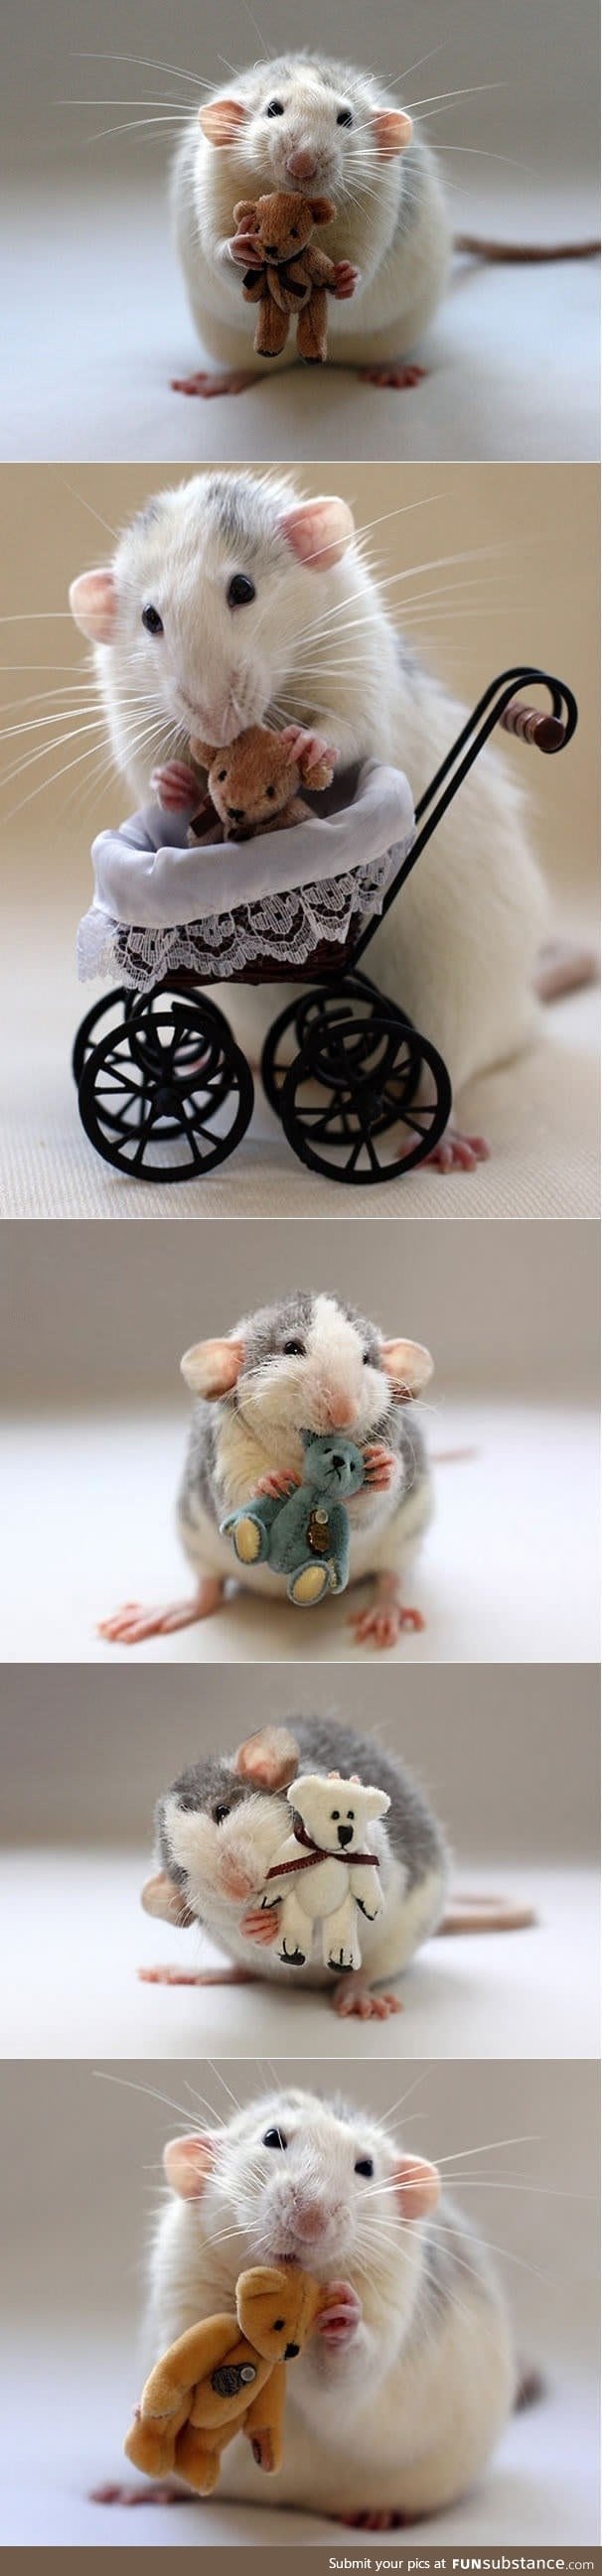 Miniature bears for rats (Ellen van Deelen)